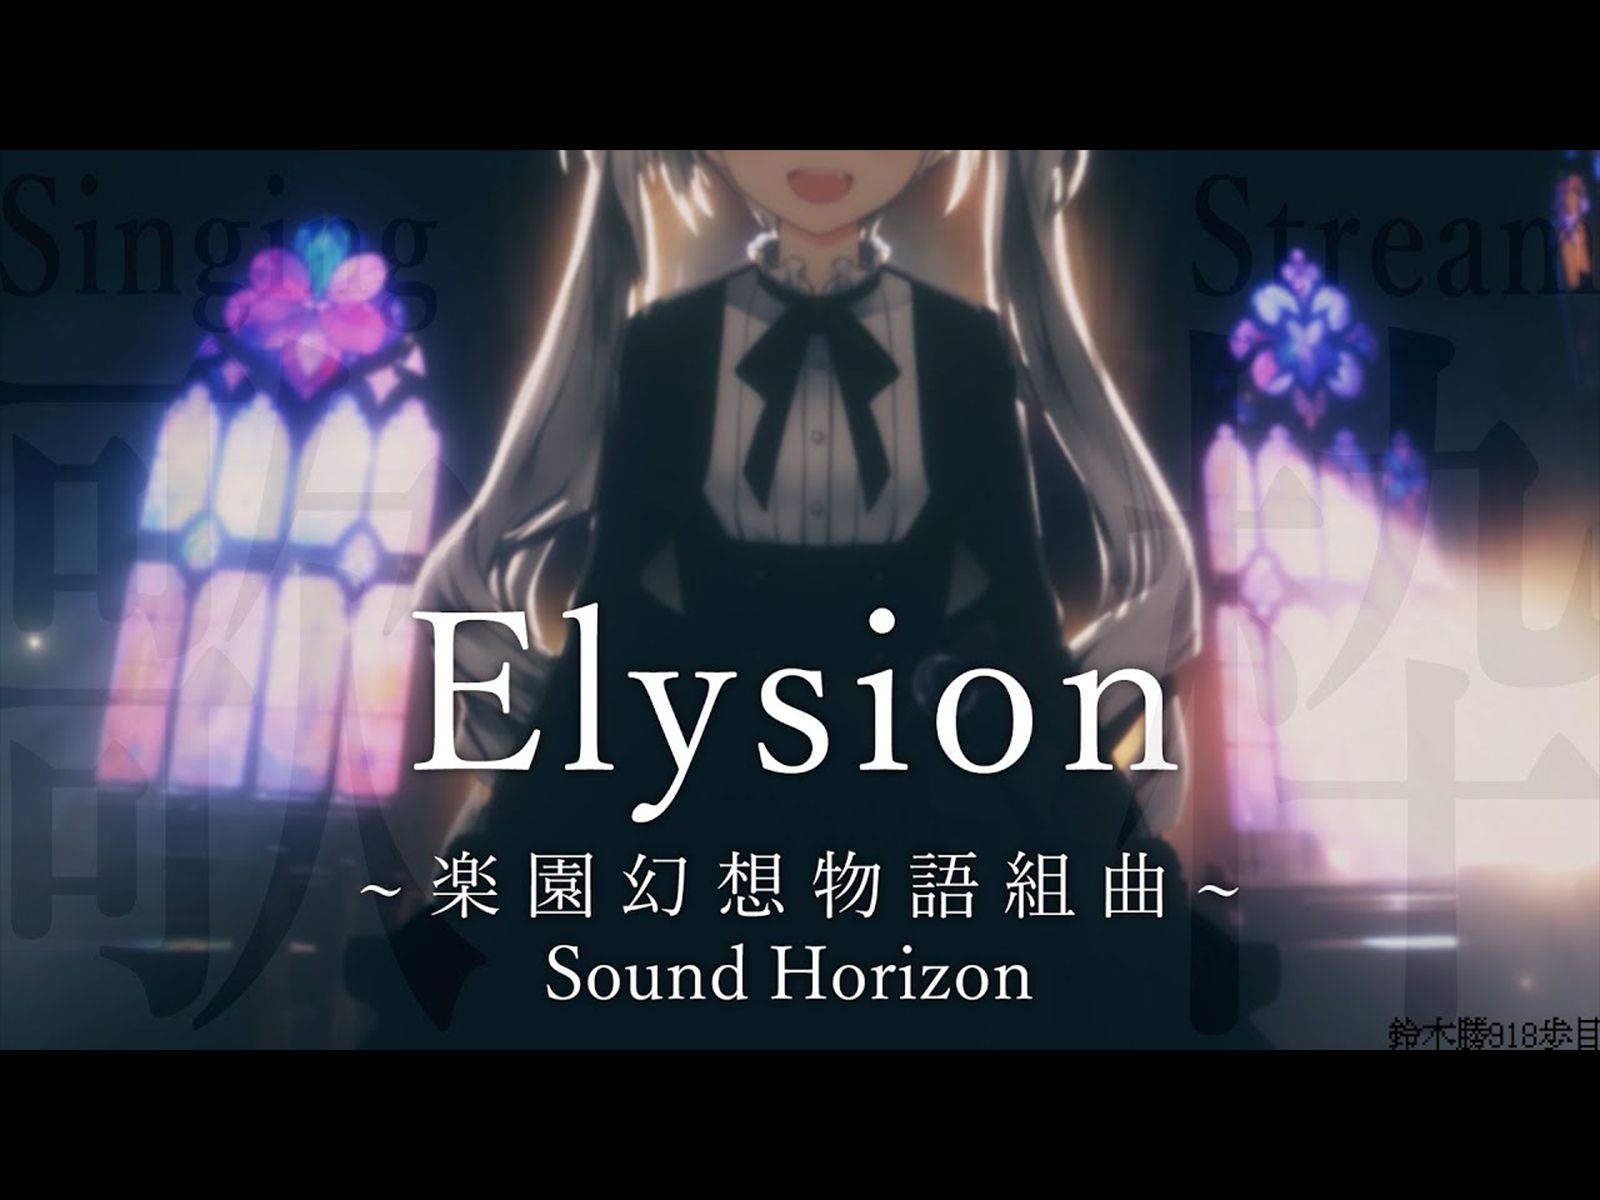 【歌回生肉】Elysion 〜乐园幻想物语组曲〜 / Sound Horizon 一口气唱完一张专辑【铃木胜/NIJISANJI】